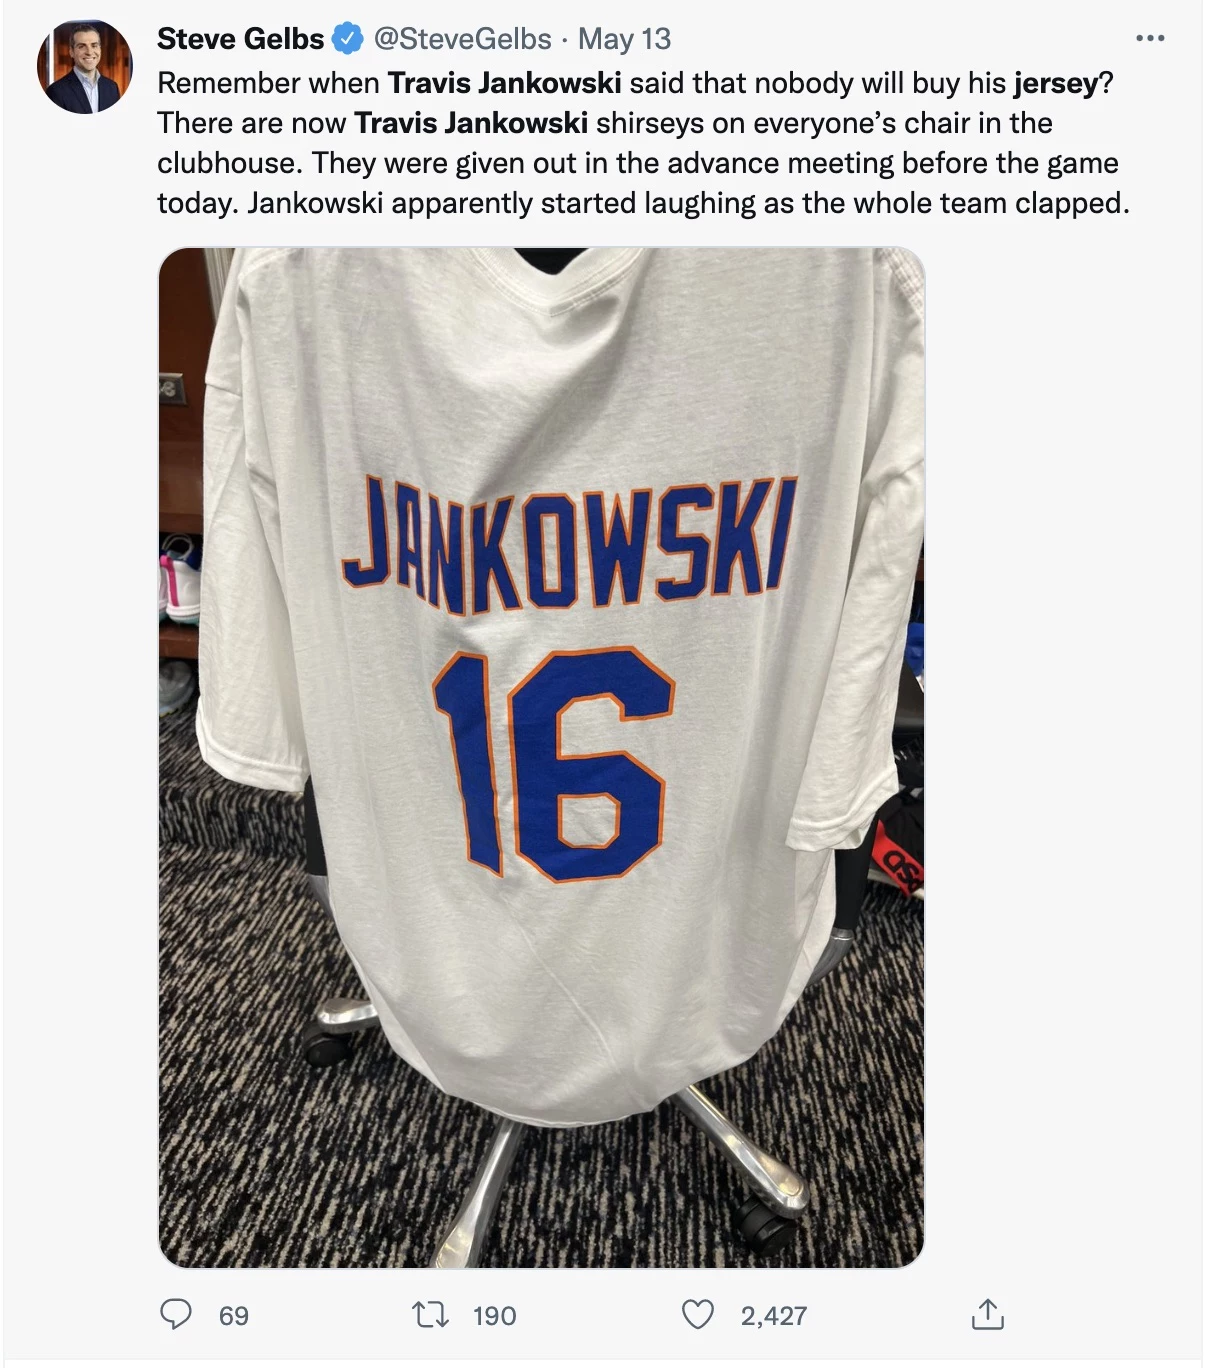 Mets players wear Travis Jankowski jerseys